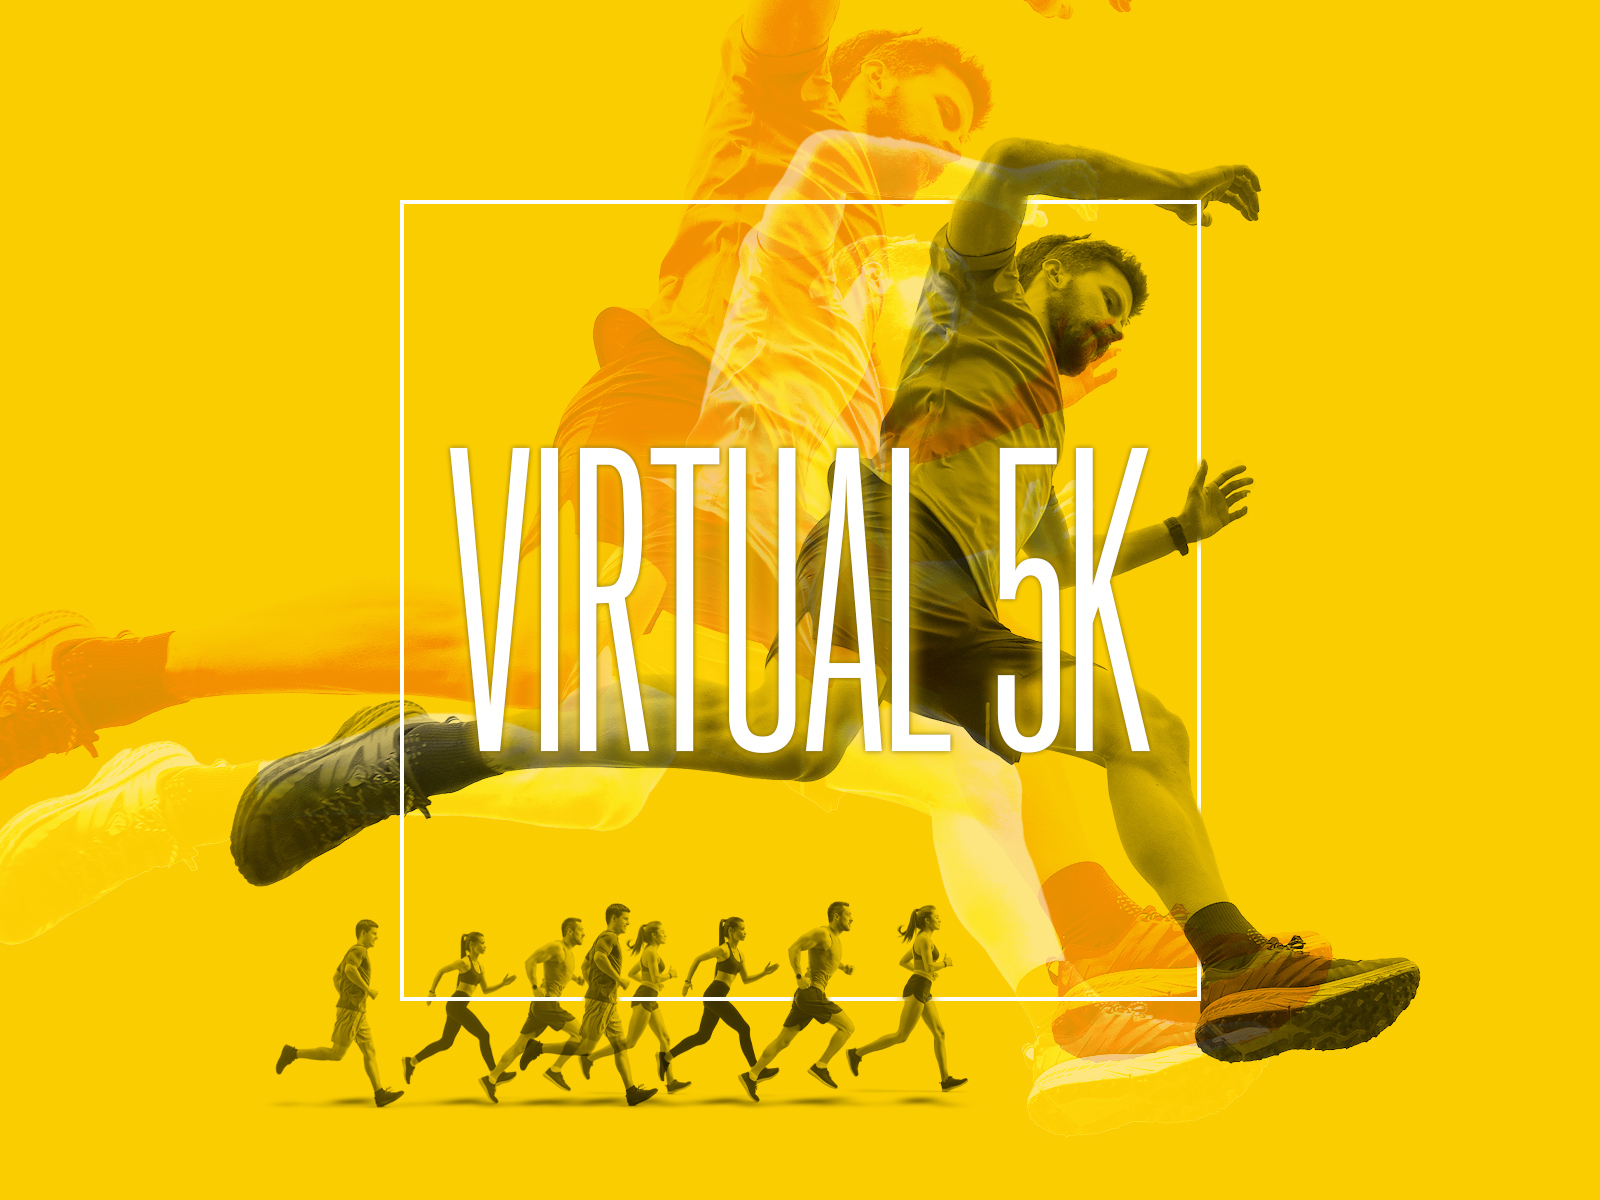 Virtual 5k by John Cross on Dribbble